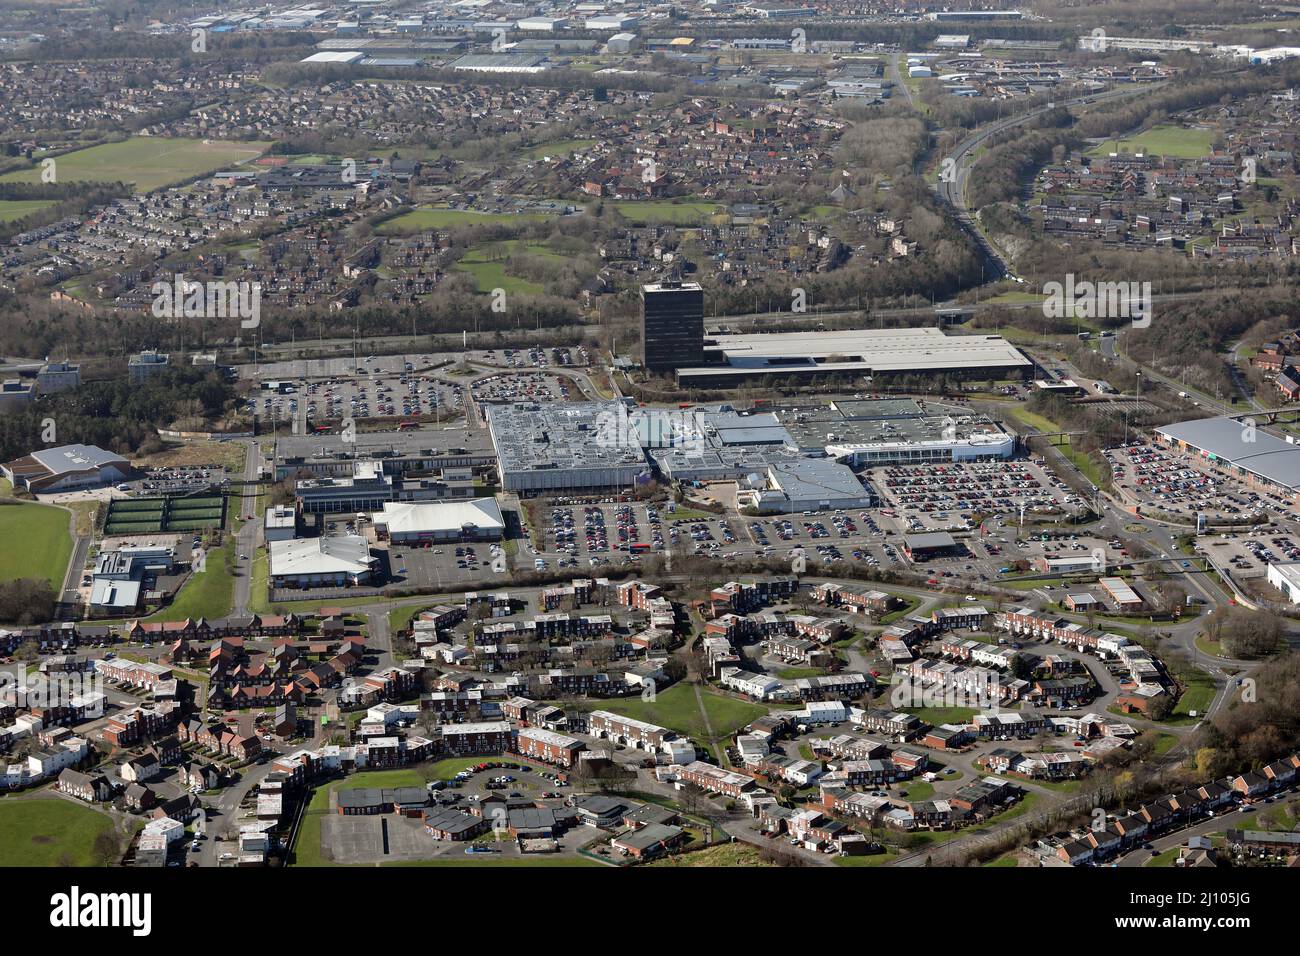 Vista aérea de Washington, Condado de Durham, Reino Unido. Foto del este con el centro comercial Galleries y el parque minorista, Asda y Sainsburys prominentes. Foto de stock